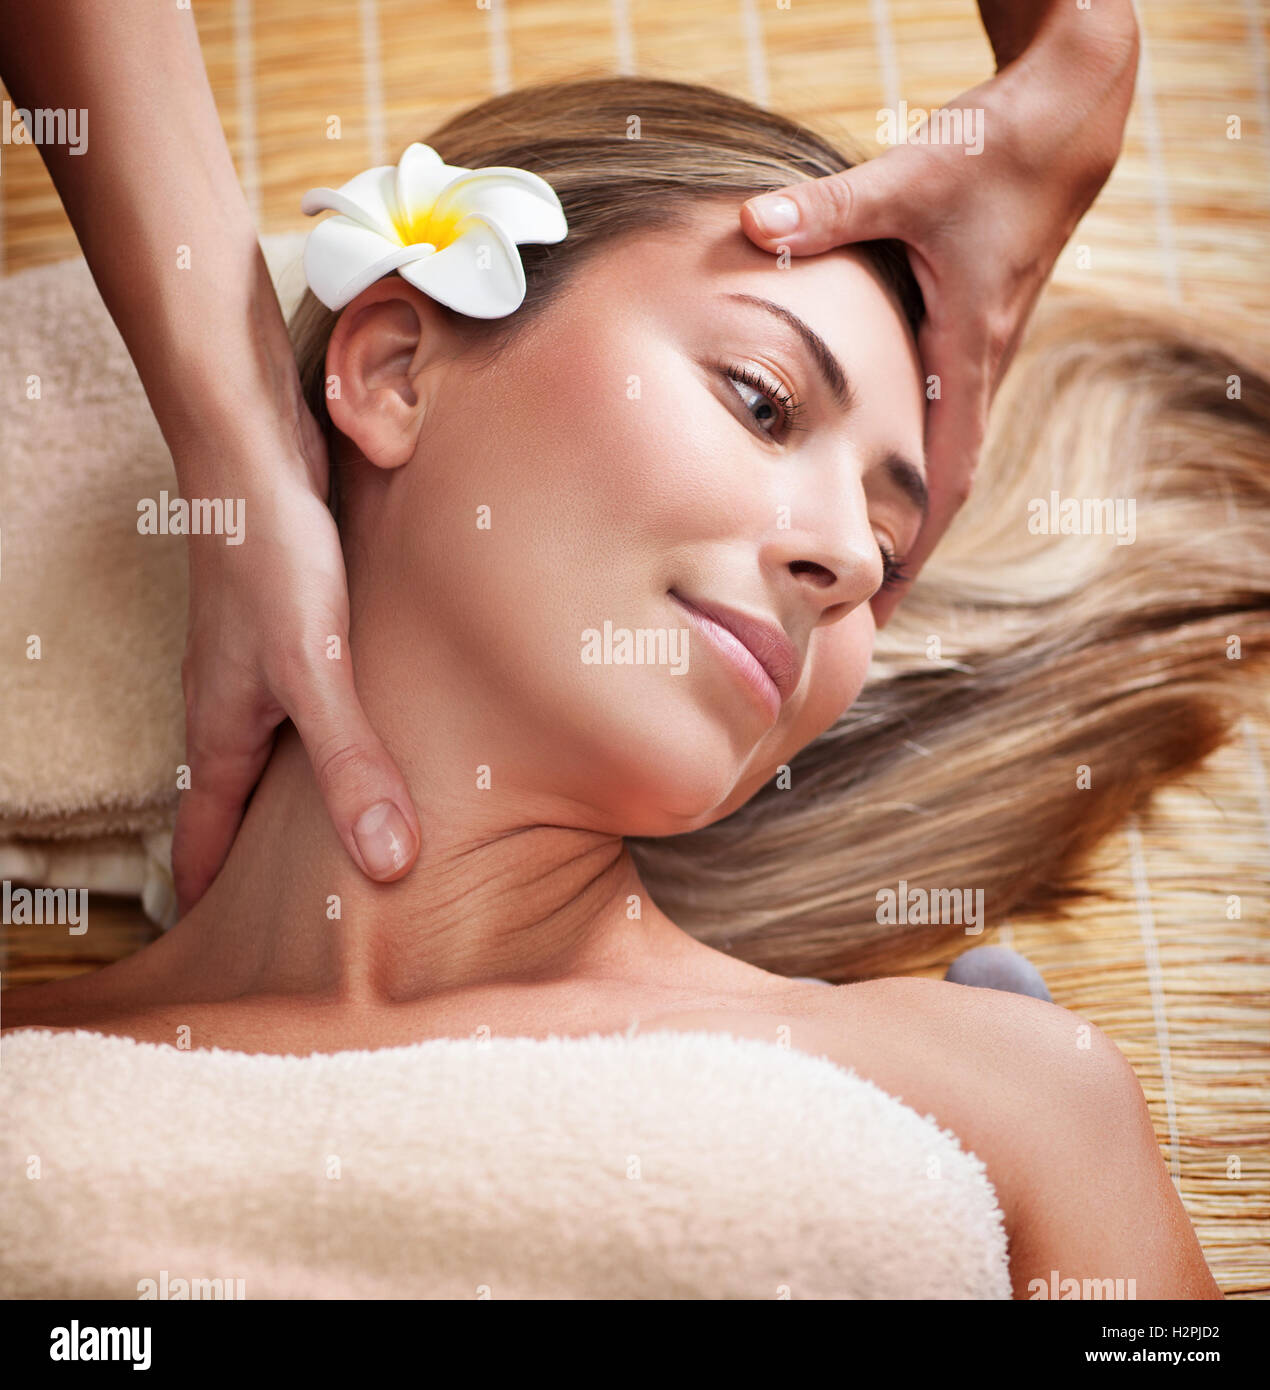 Mujer durante el masaje facial, masajistas haciendo un masaje facial para una hermosa y tranquila, la belleza femenina y tratamiento saludable Foto de stock